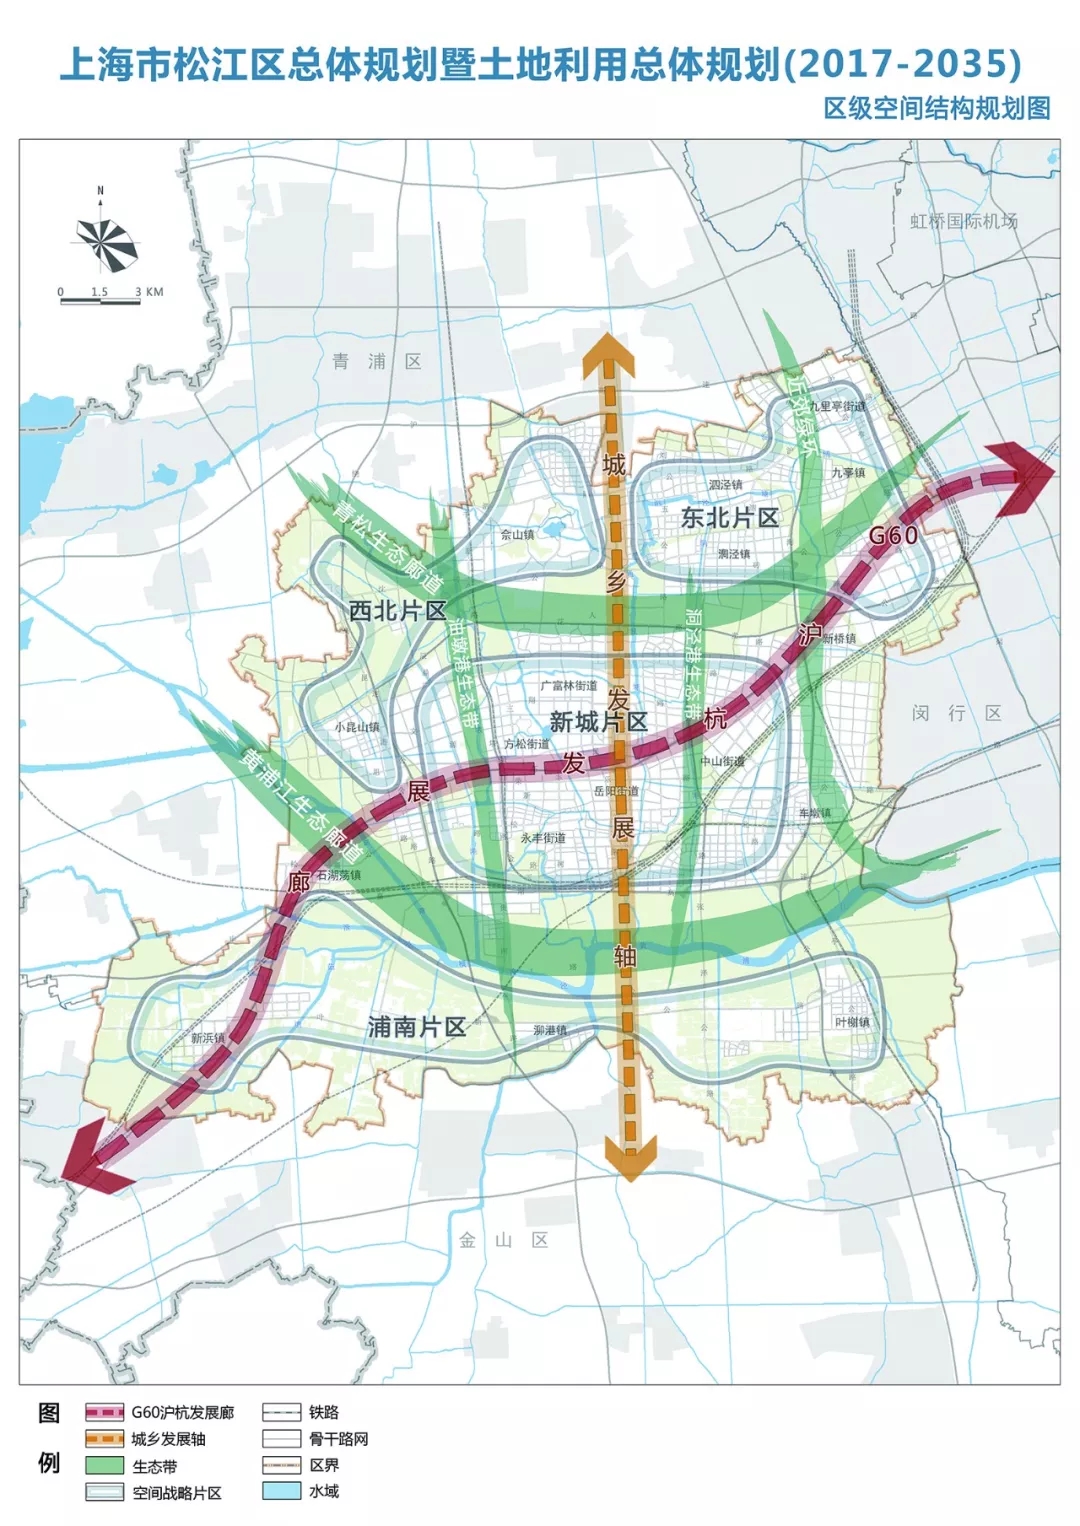 上图来源于《上海市松江区总体规划暨土地利用总体规划(2017-2035年)》